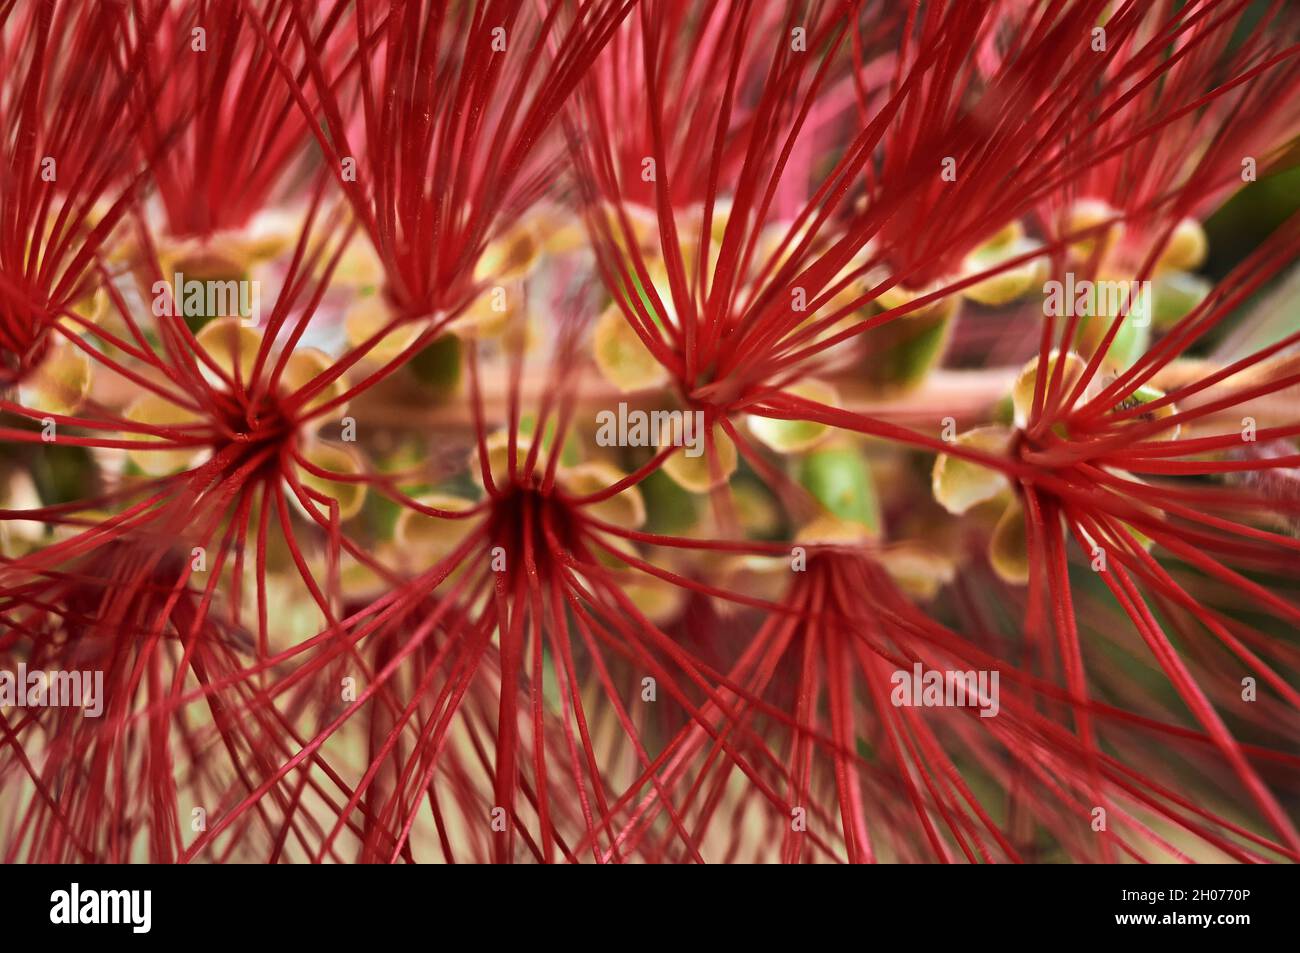 Callistemon oder Kalistem, Blume des Strauchs der Myrtaceae-Familie, aufgrund seiner Form auch als Röhrenreiniger, Flaschenreiniger oder Pinsel bezeichnet Stockfoto